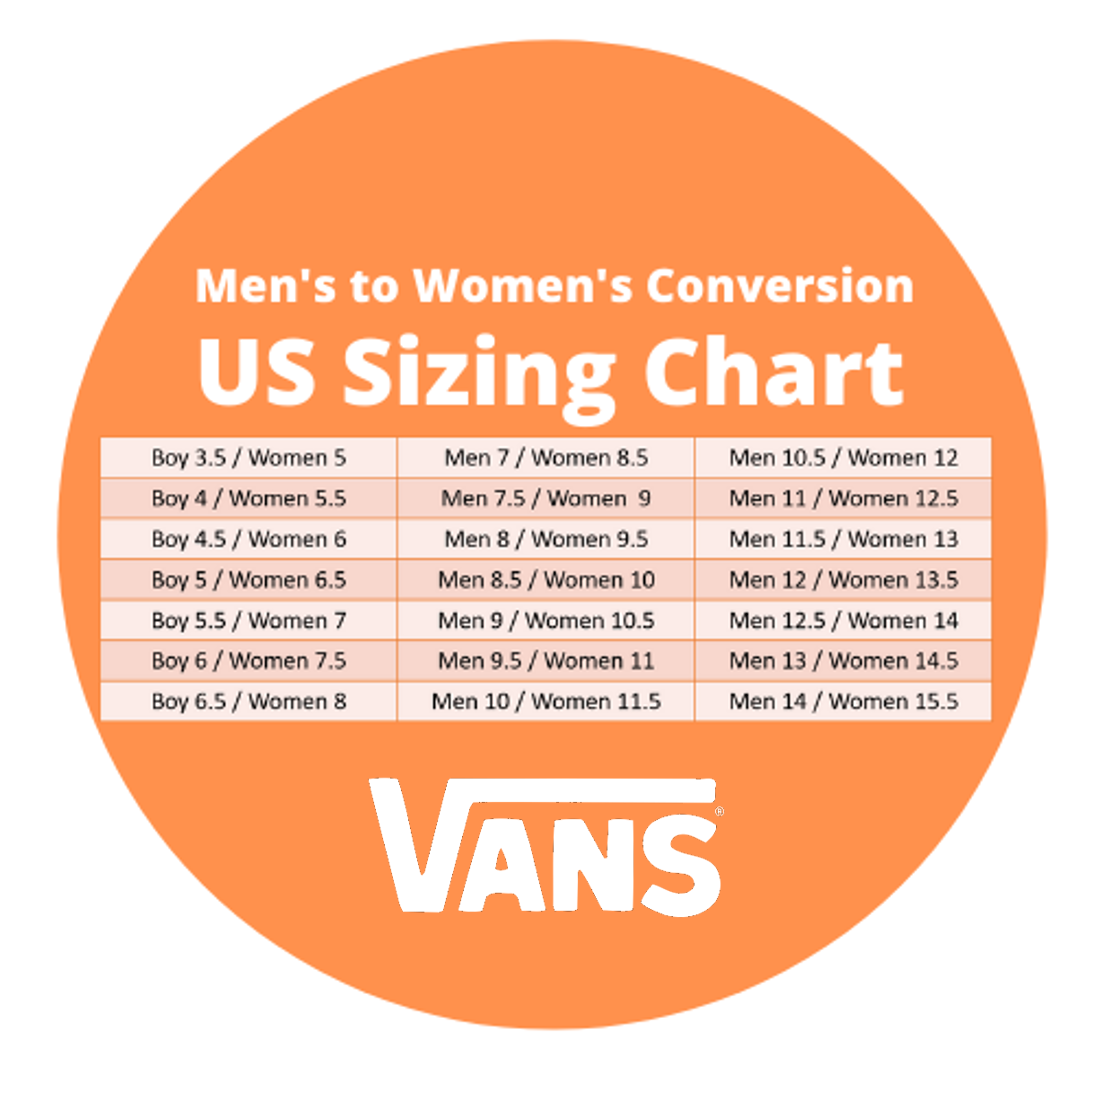 5 in men's is what size in women's